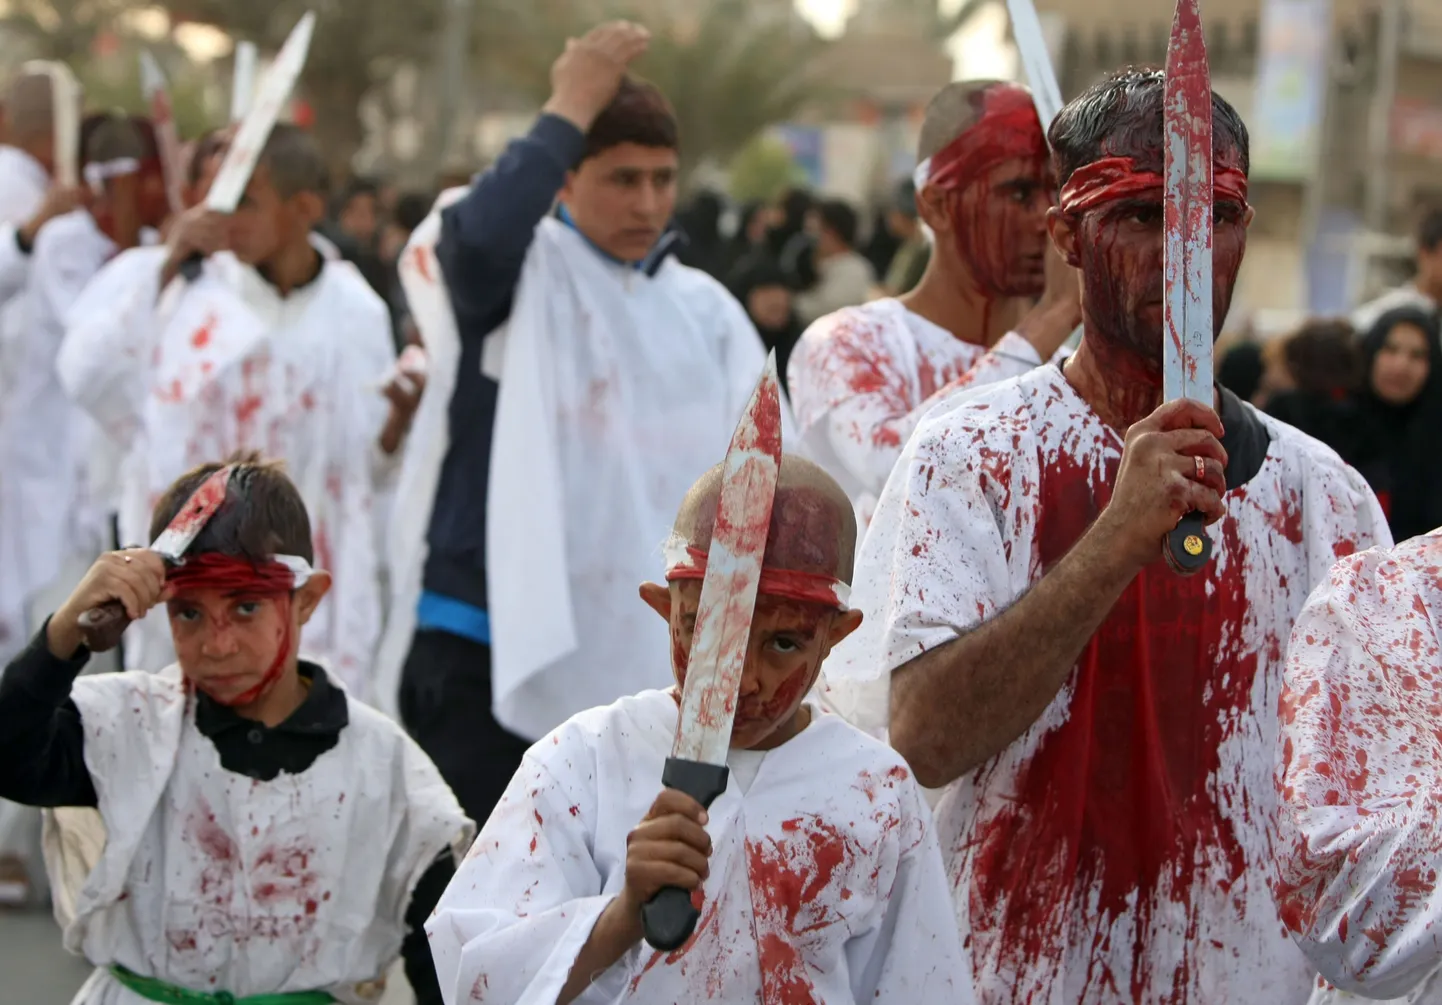 Enda piitsutamisest verised Iraagi šiiidid täna Bagdadis Ashurat tähistamas.